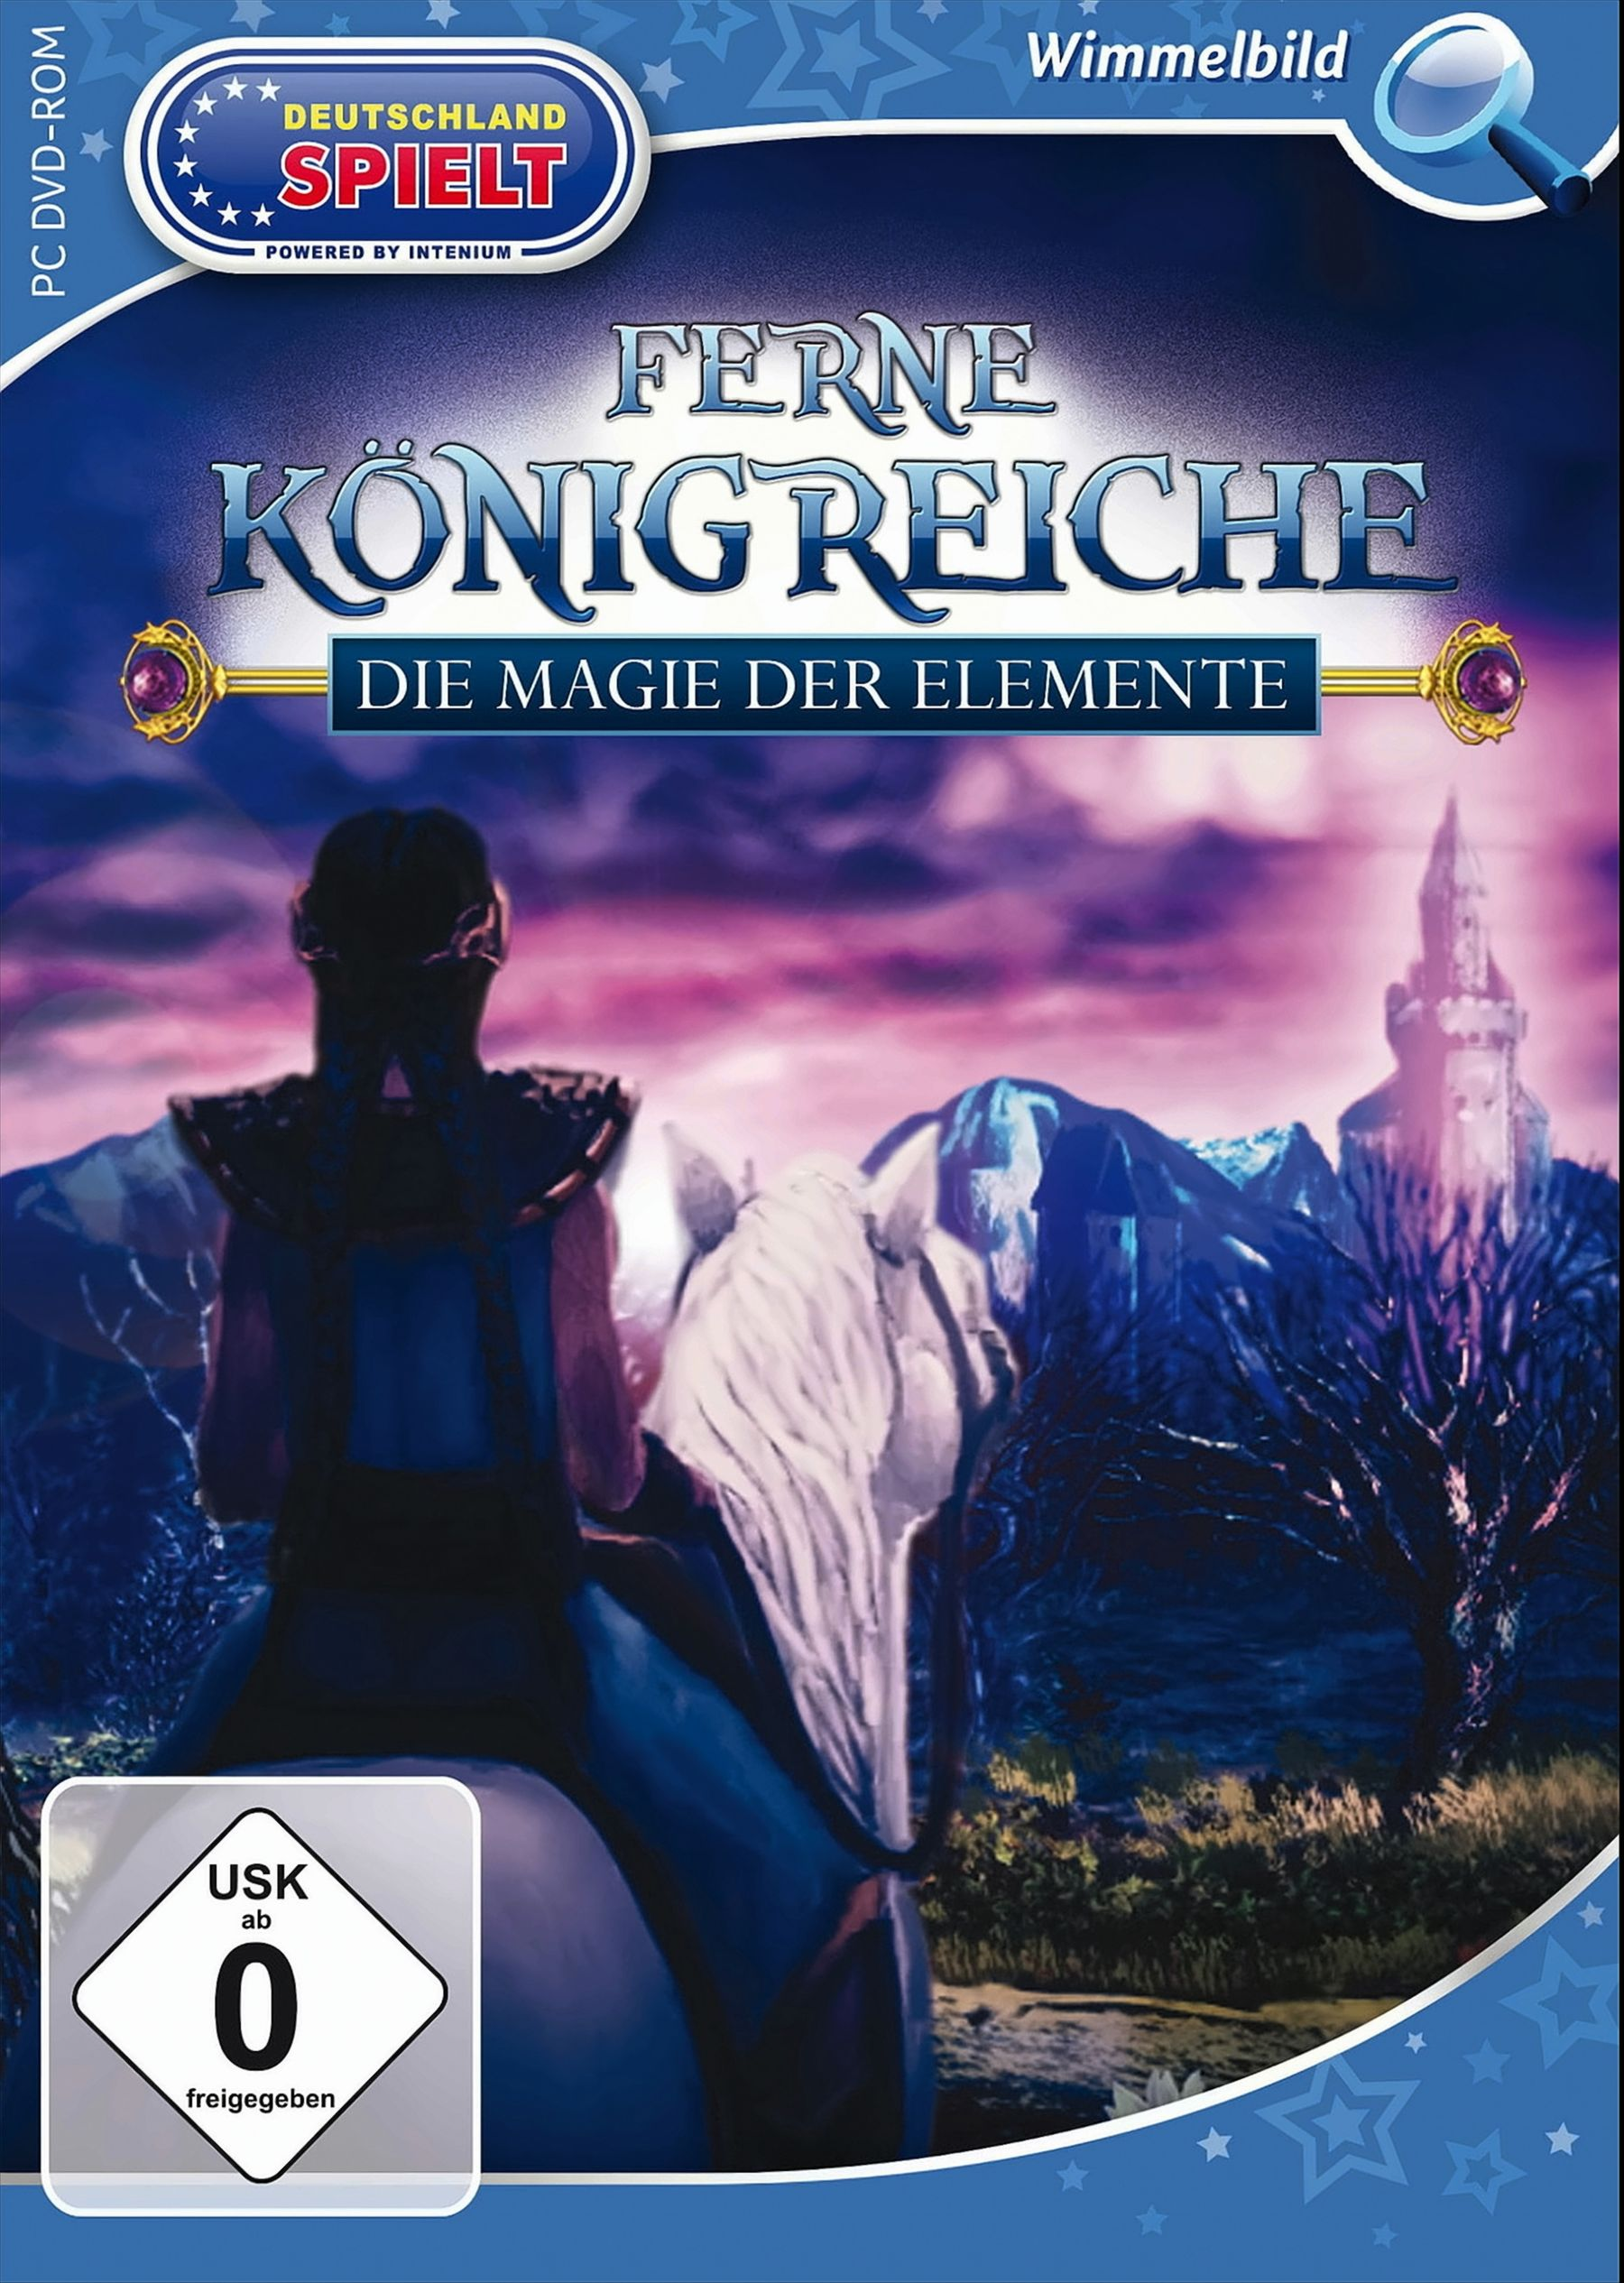 Ferne Königreiche: Die [PC] - der Elemente Magie